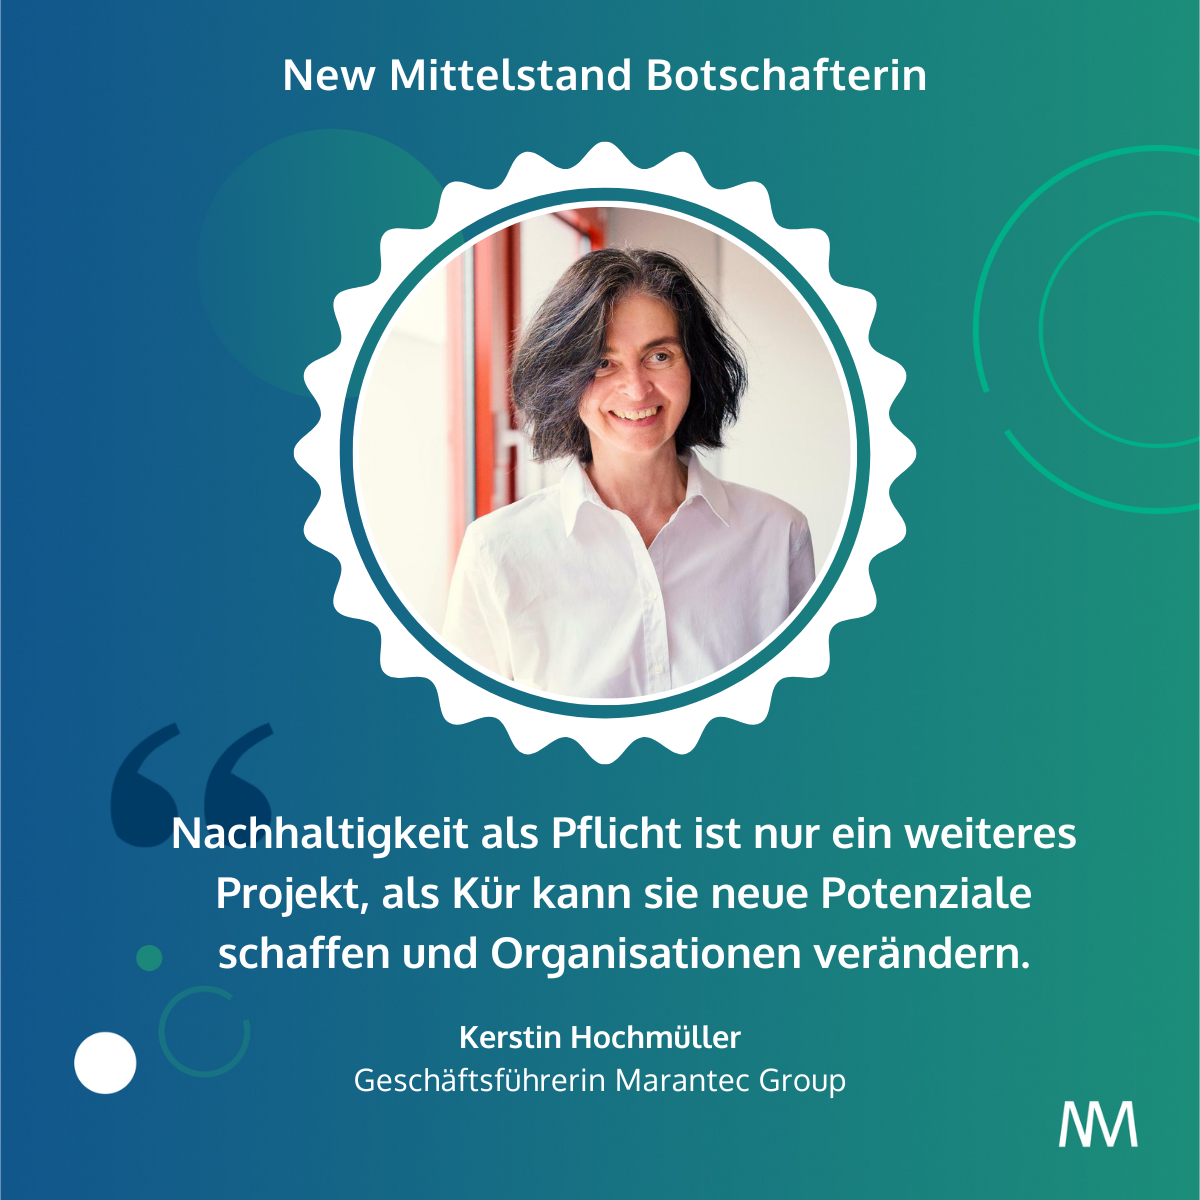 2024-New-Mittelstand-Botschafterin-Kerstin-Hochmueller.png